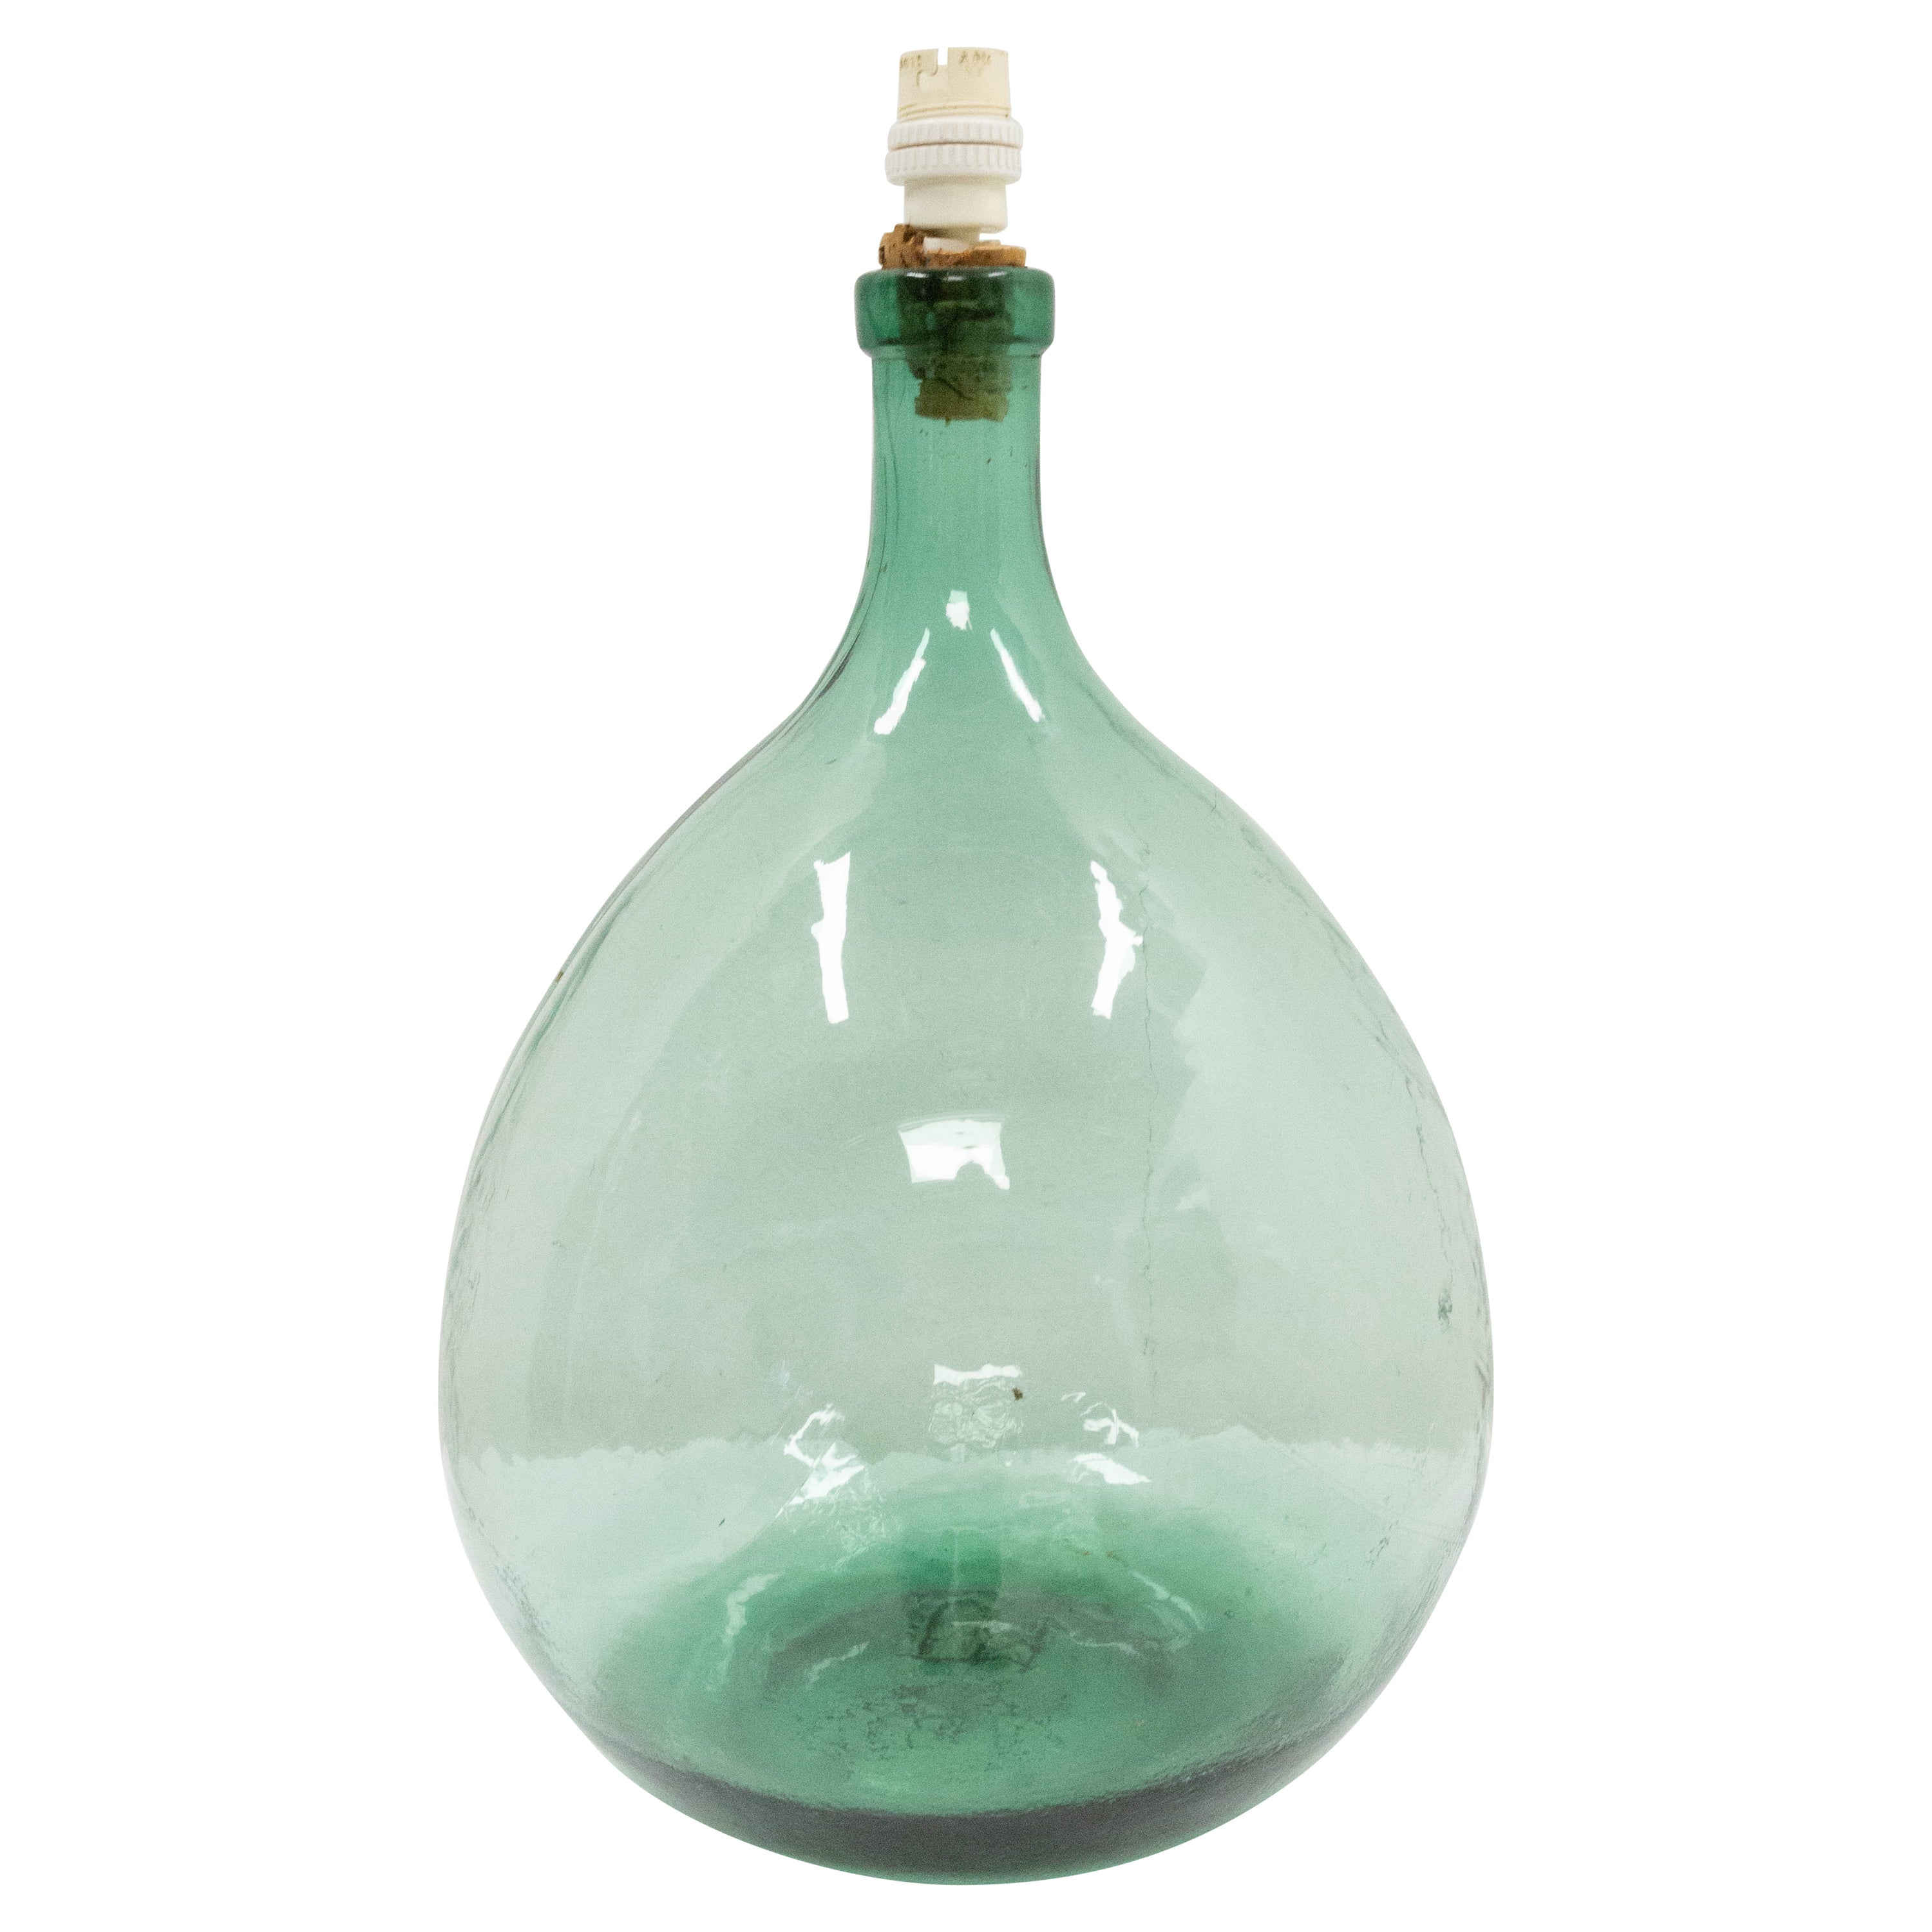 Lampe auf einem Vintage-Glasflaschen Demijohns Lady Jeanne oder Carboys montiert, Frankreich